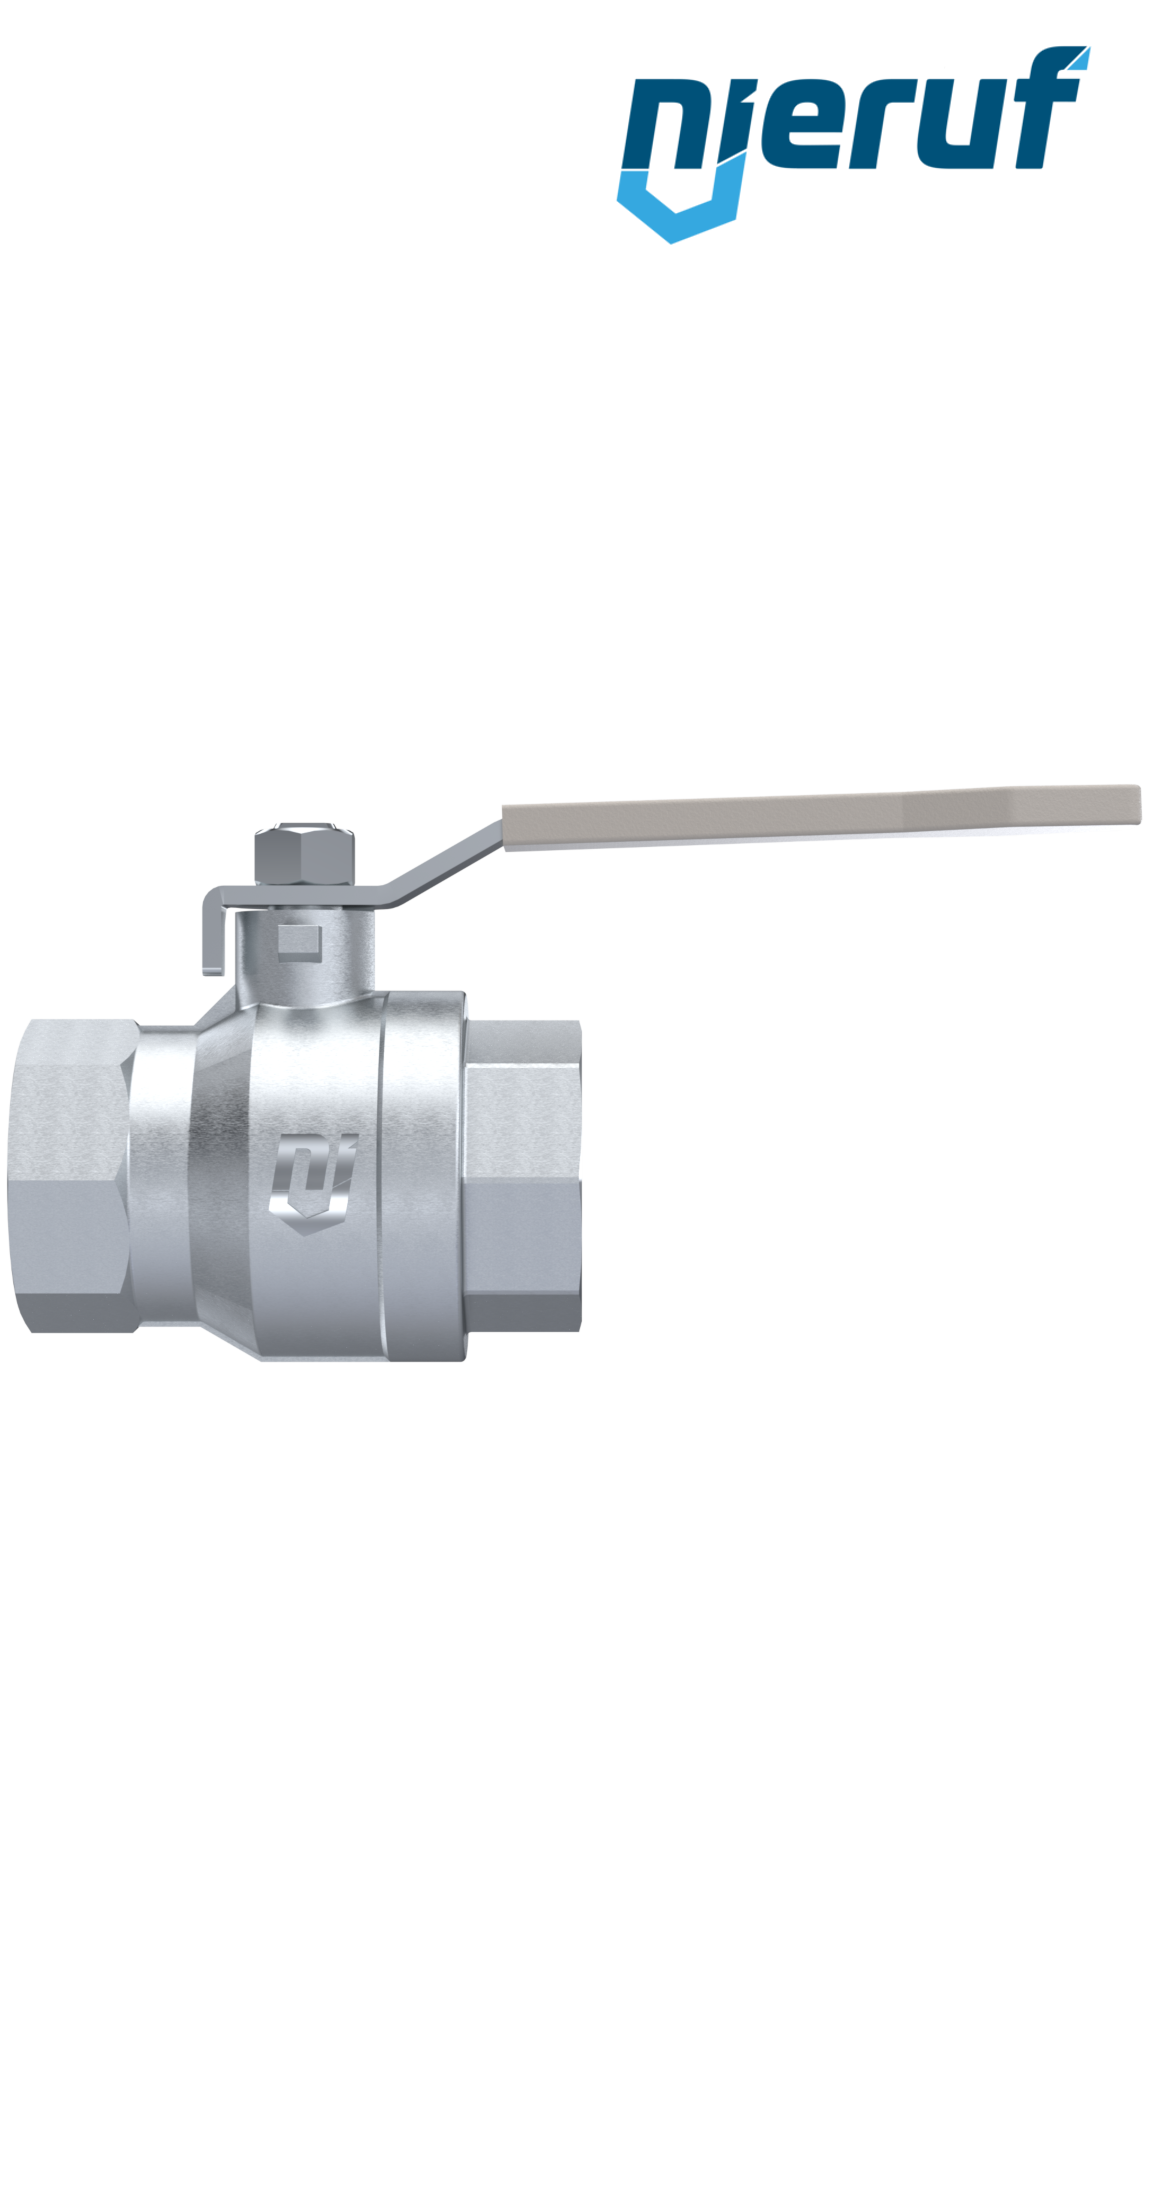 ball valve made of brass DN40 - 1 1/2" inch GK02 gas & water DVGW